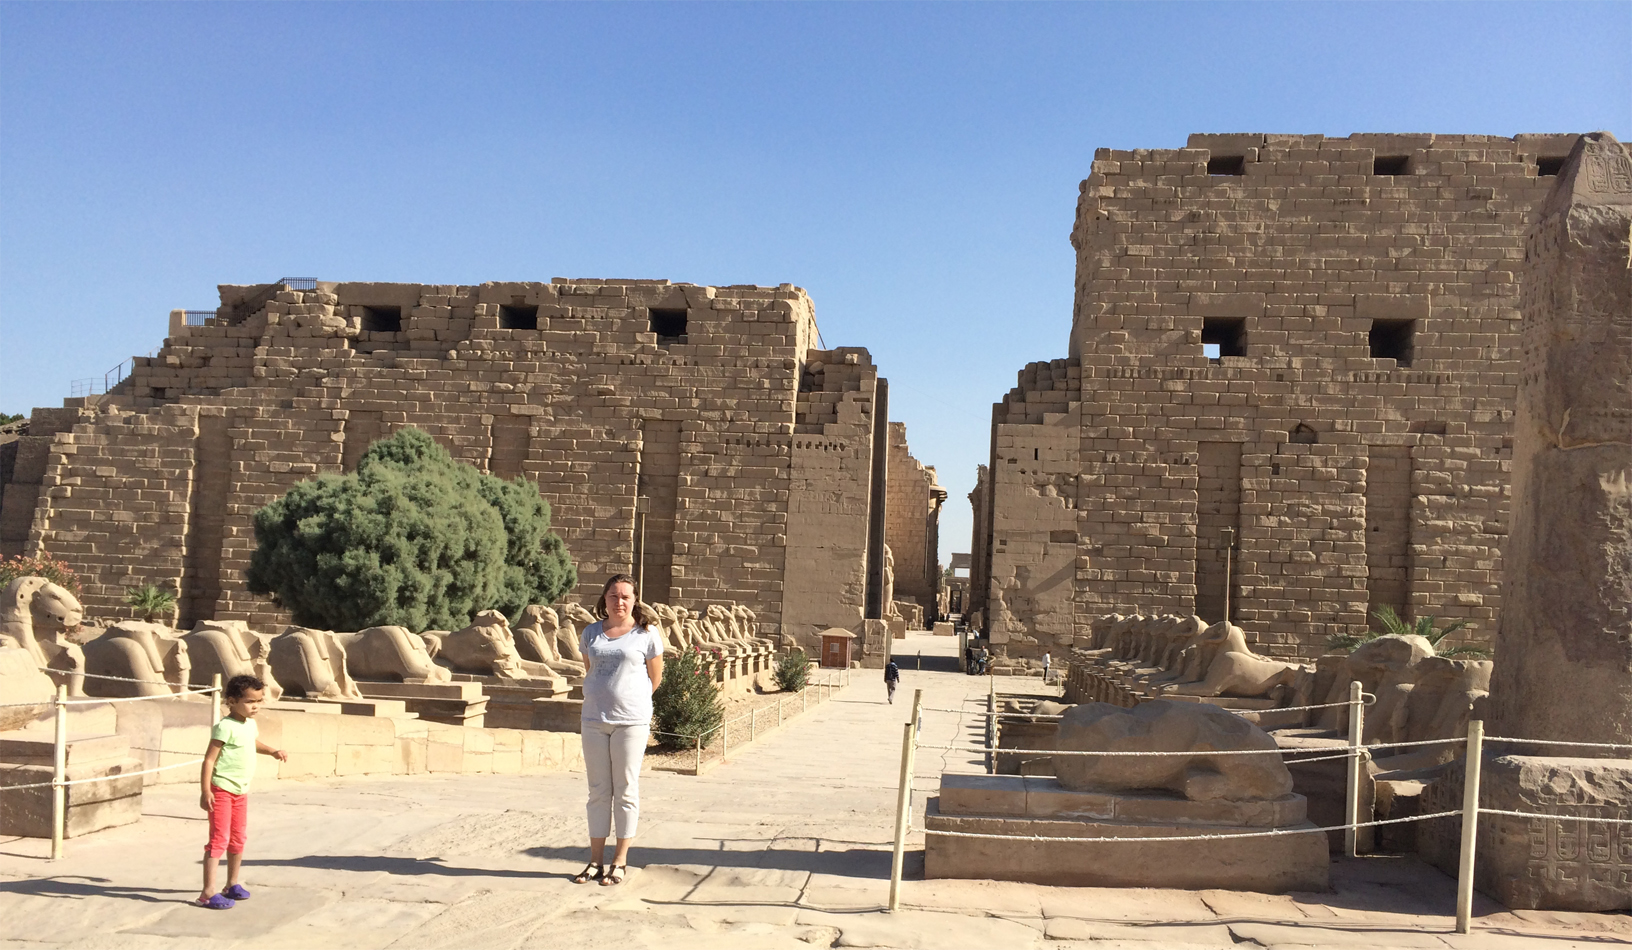 
Templo de Karnak